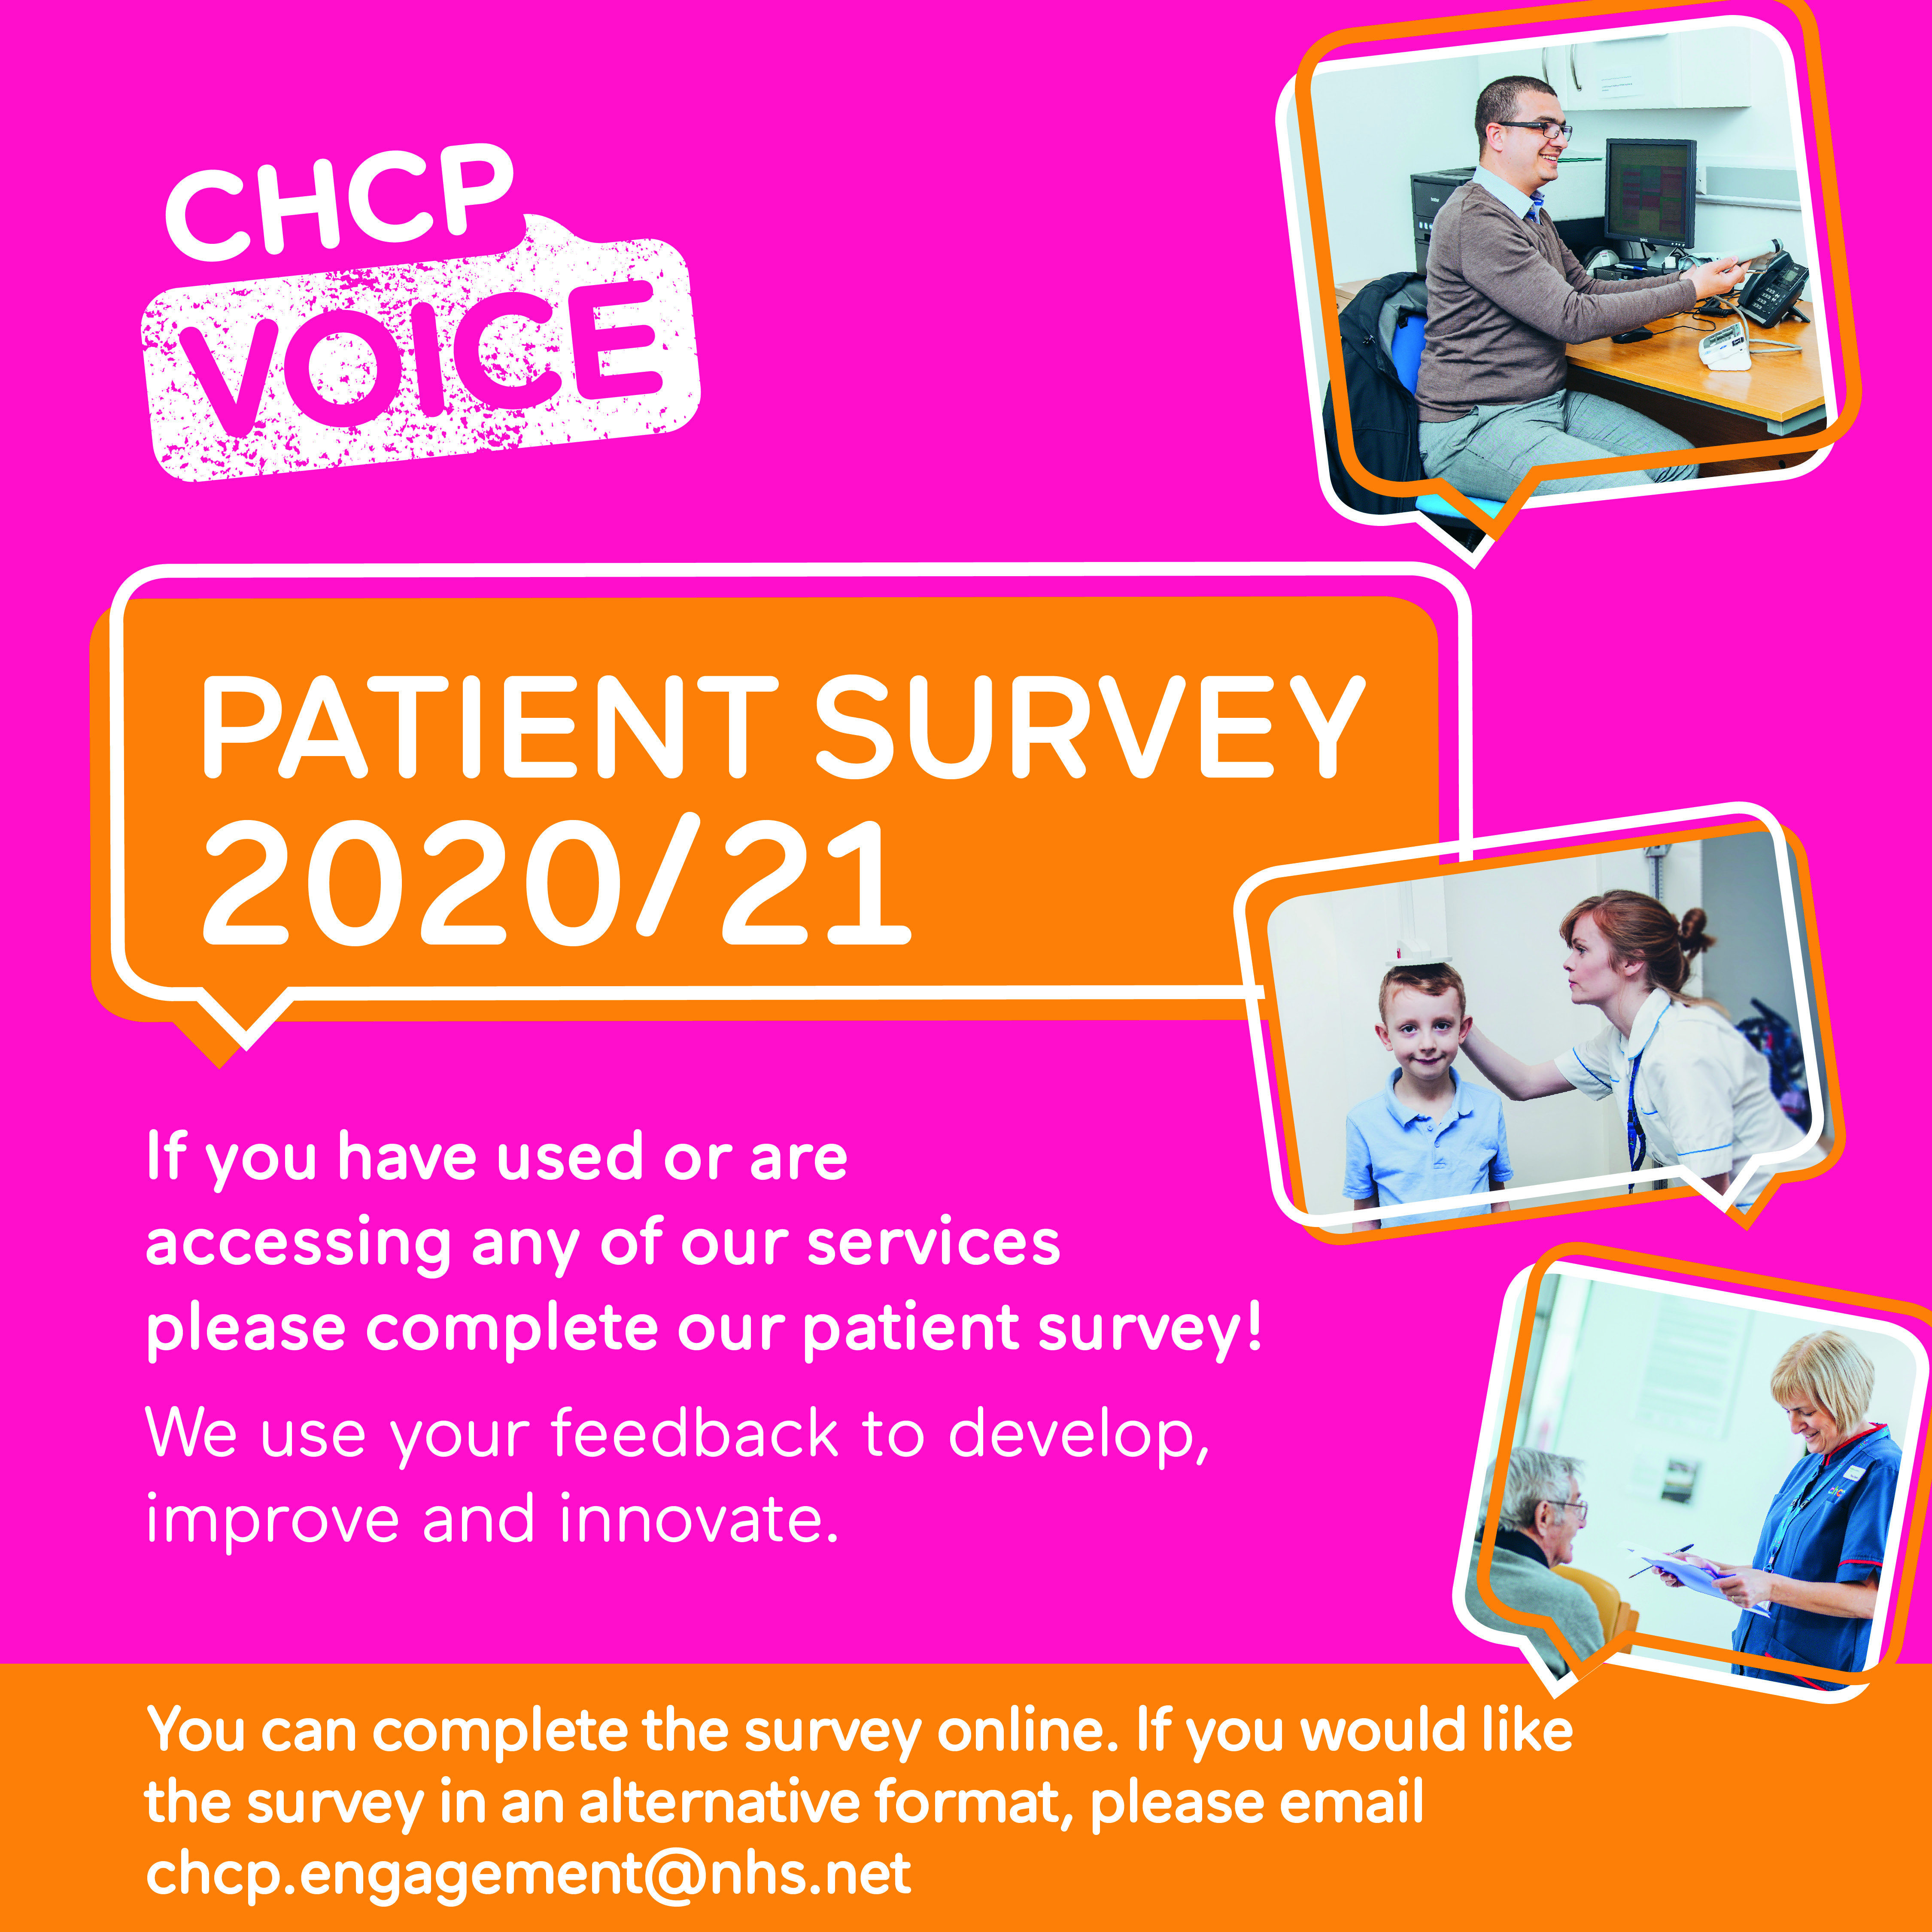 Patient survey 20/21